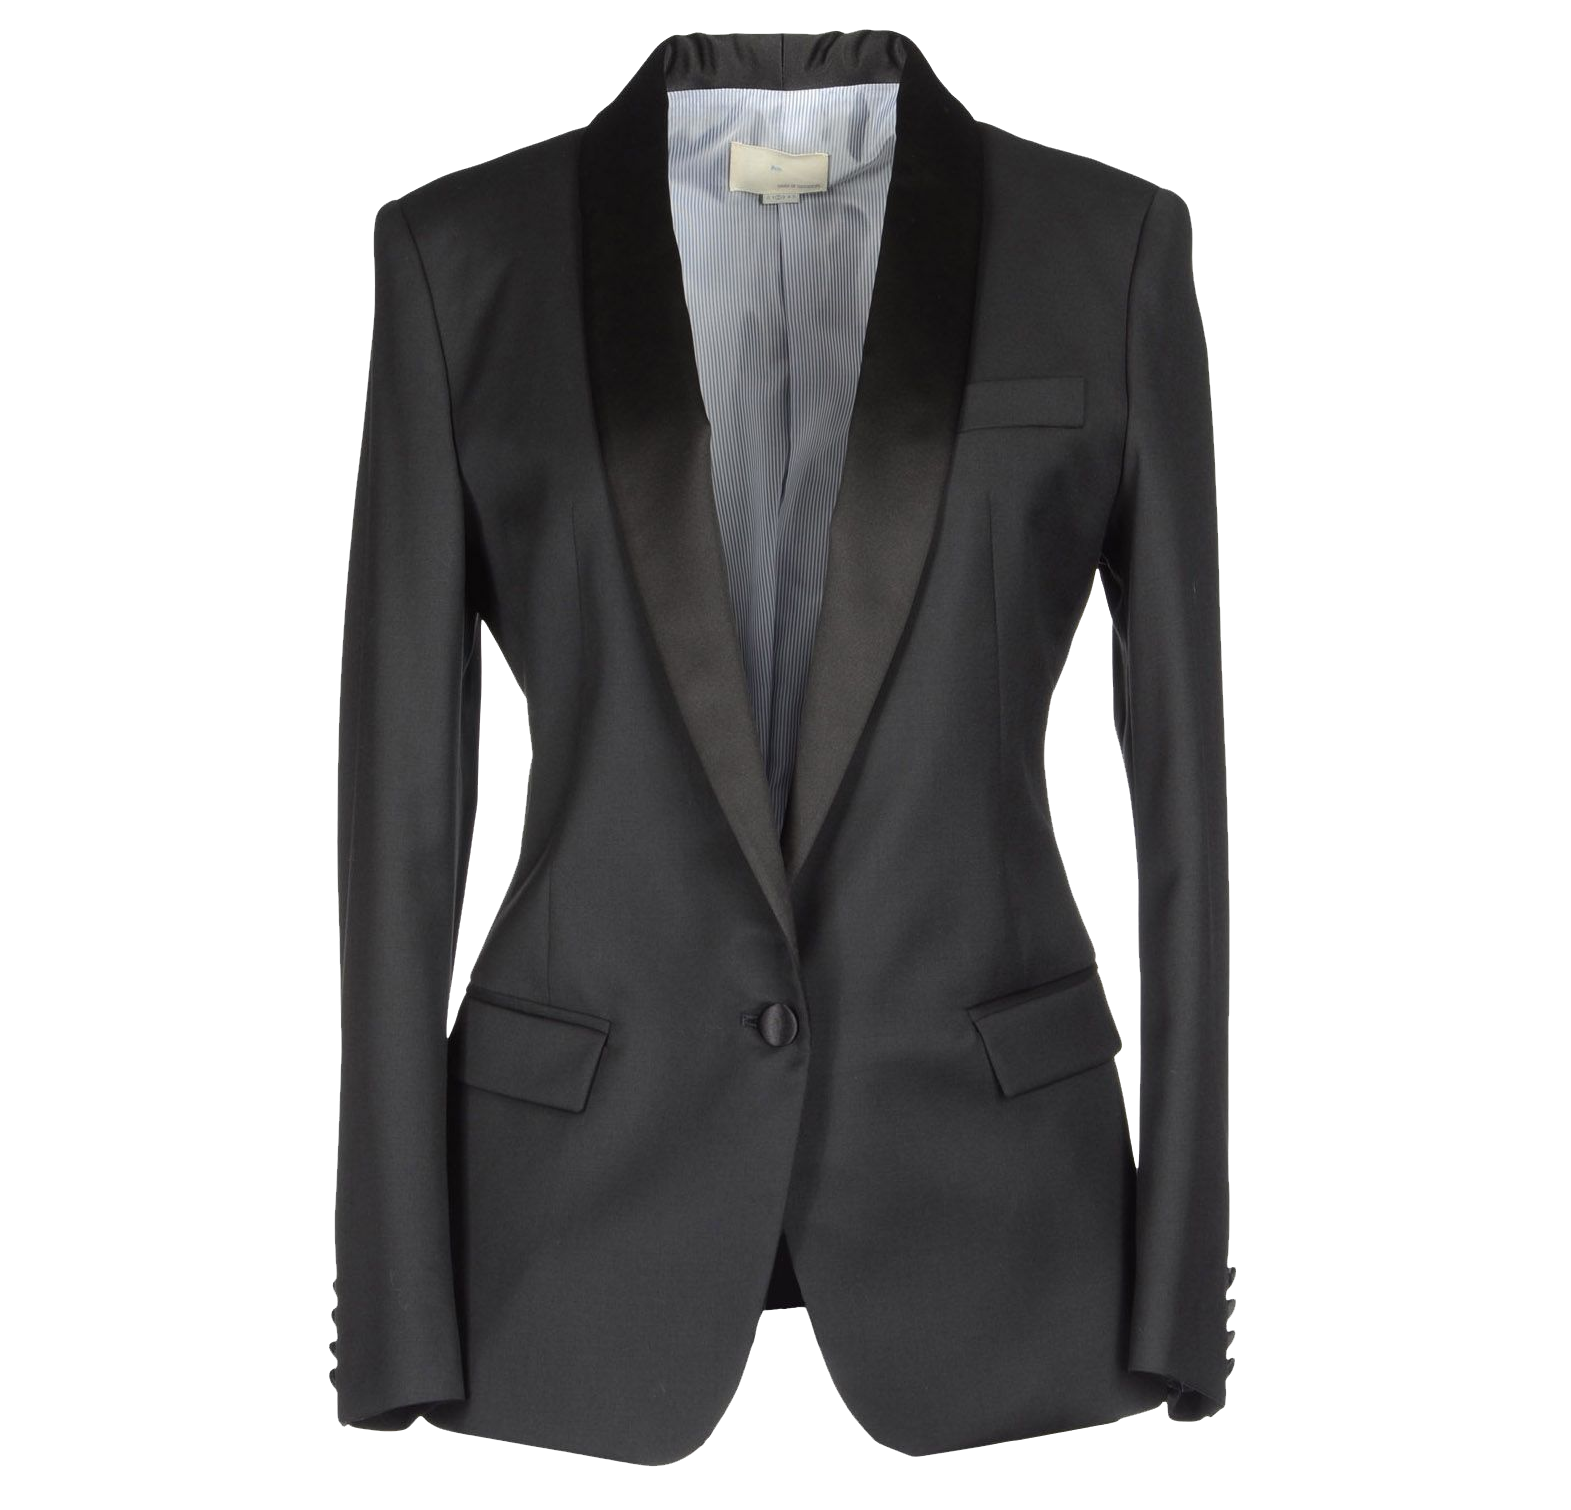 Blazer png transparent images. Suit clipart coat tie